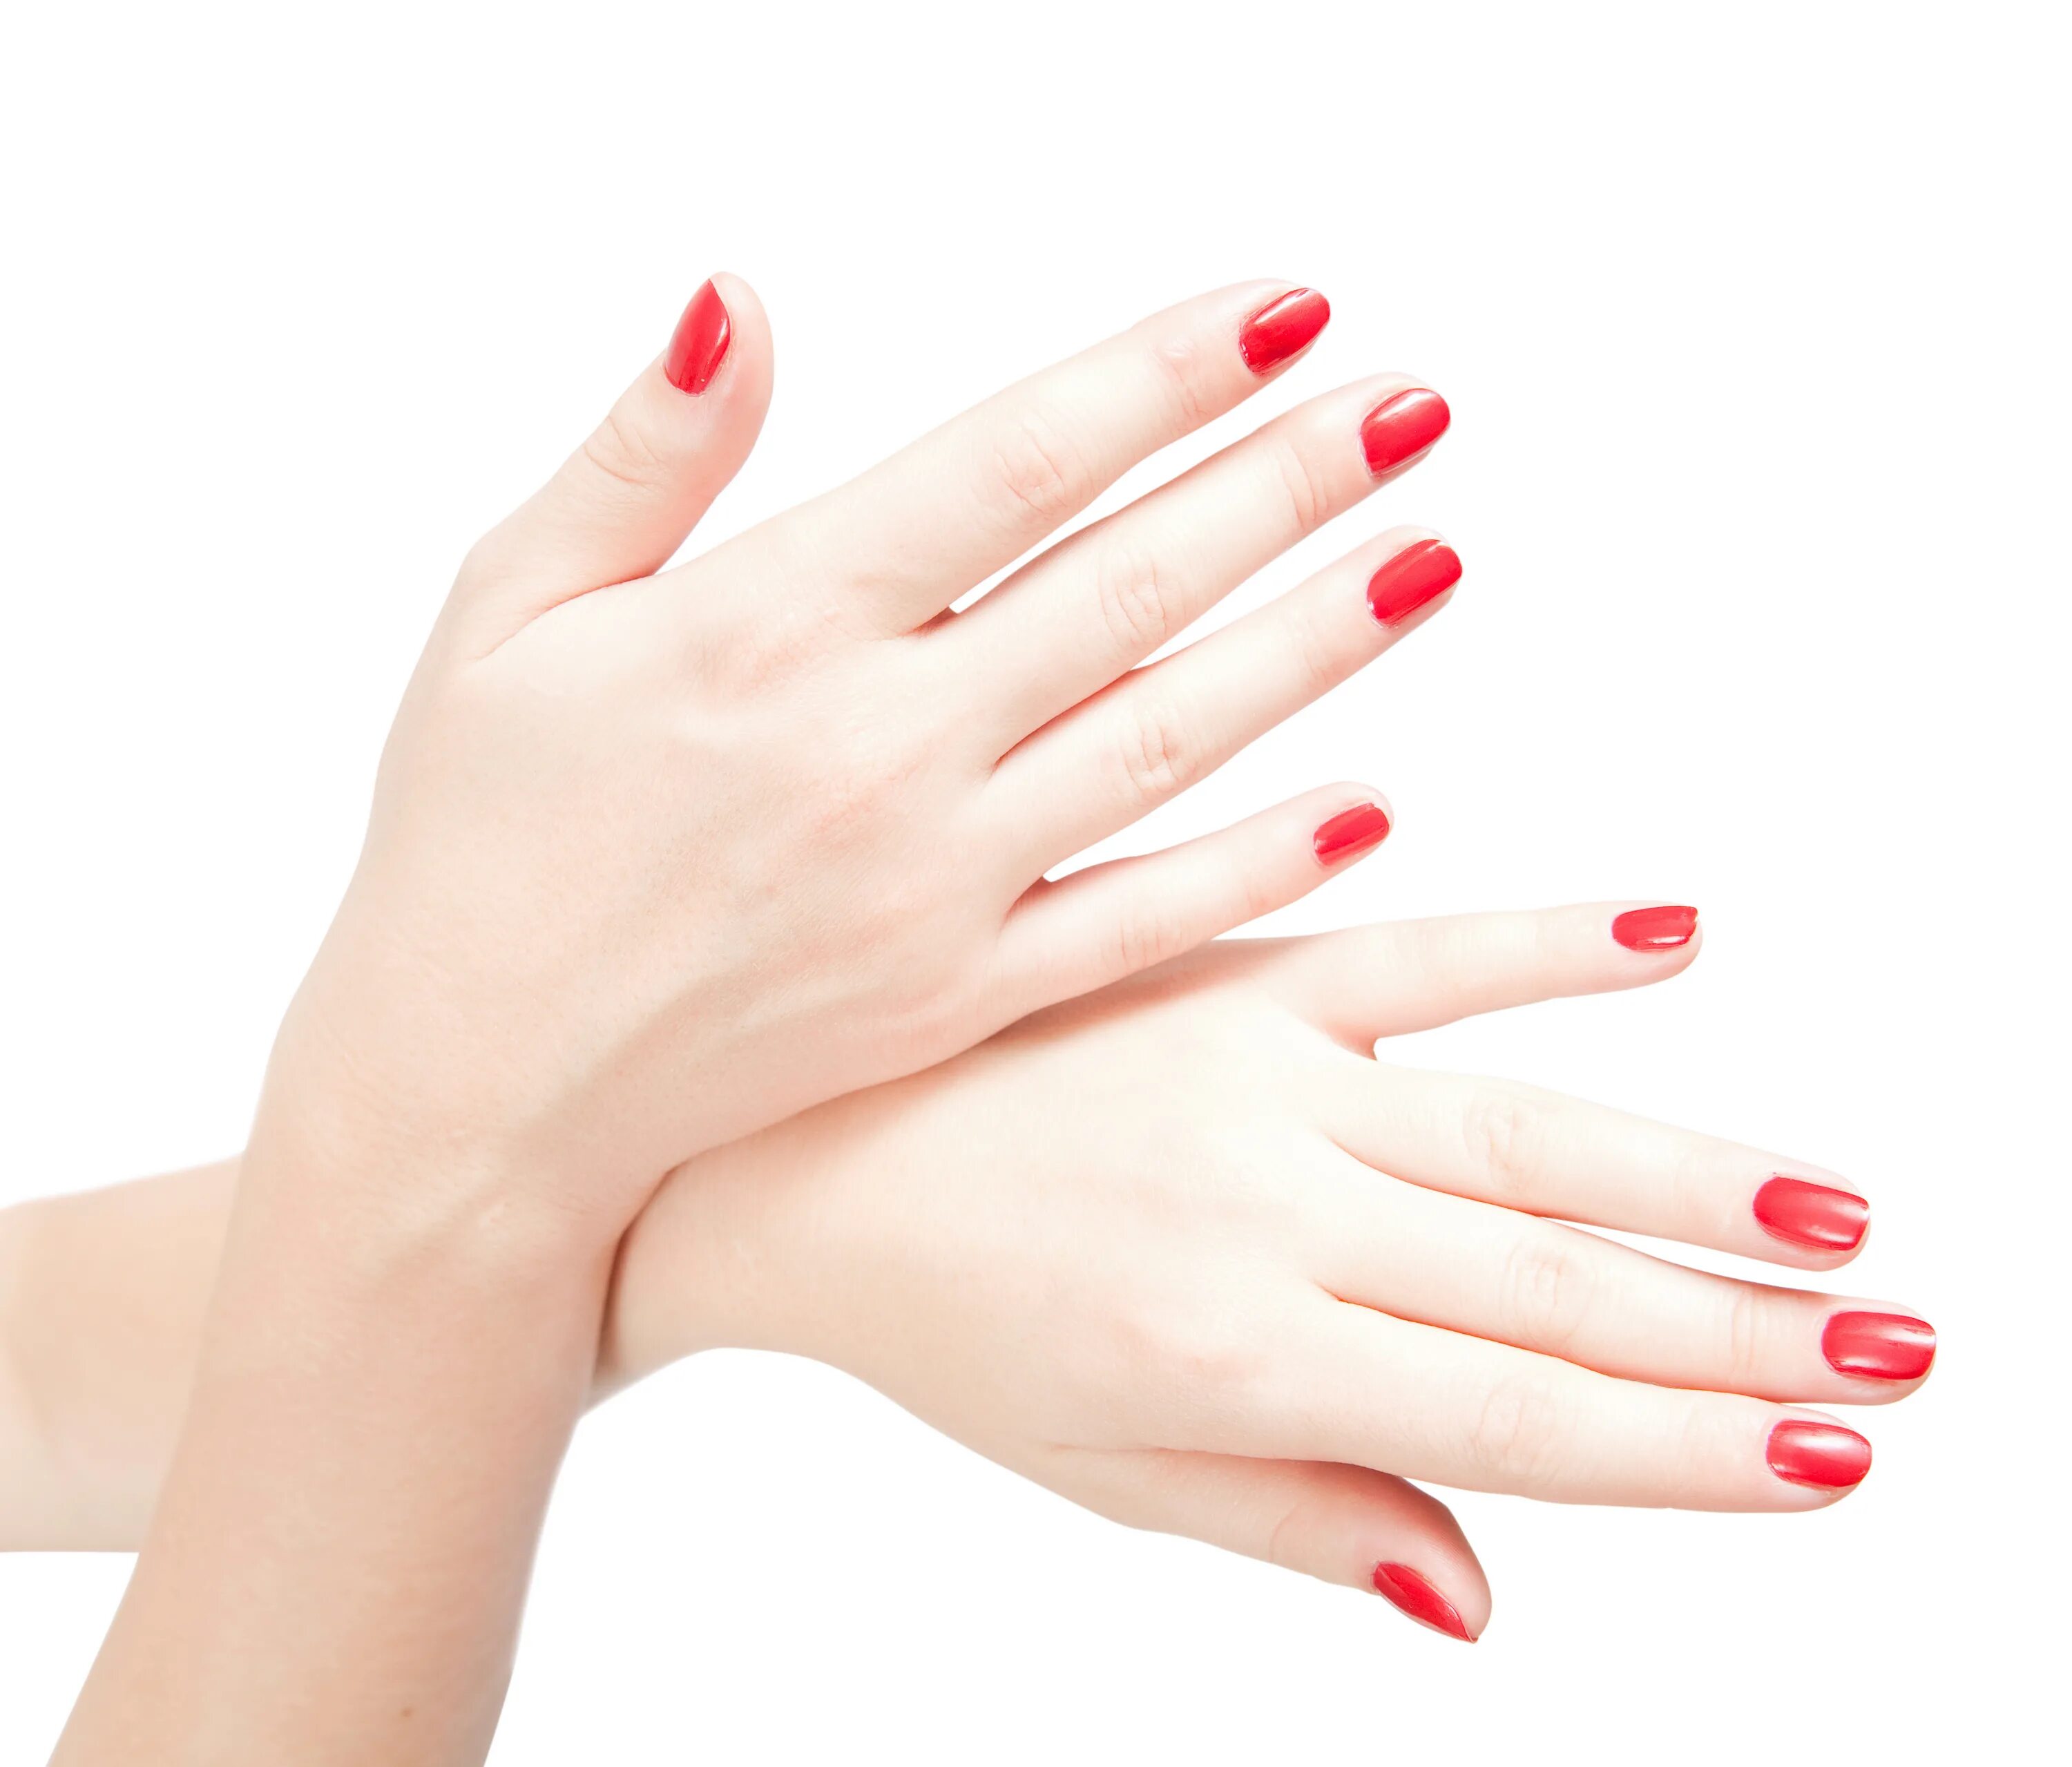 Пальцы женщин красивые. Женские ногти. Красивые руки с маникюром. Женский маникюр. Женская рука.